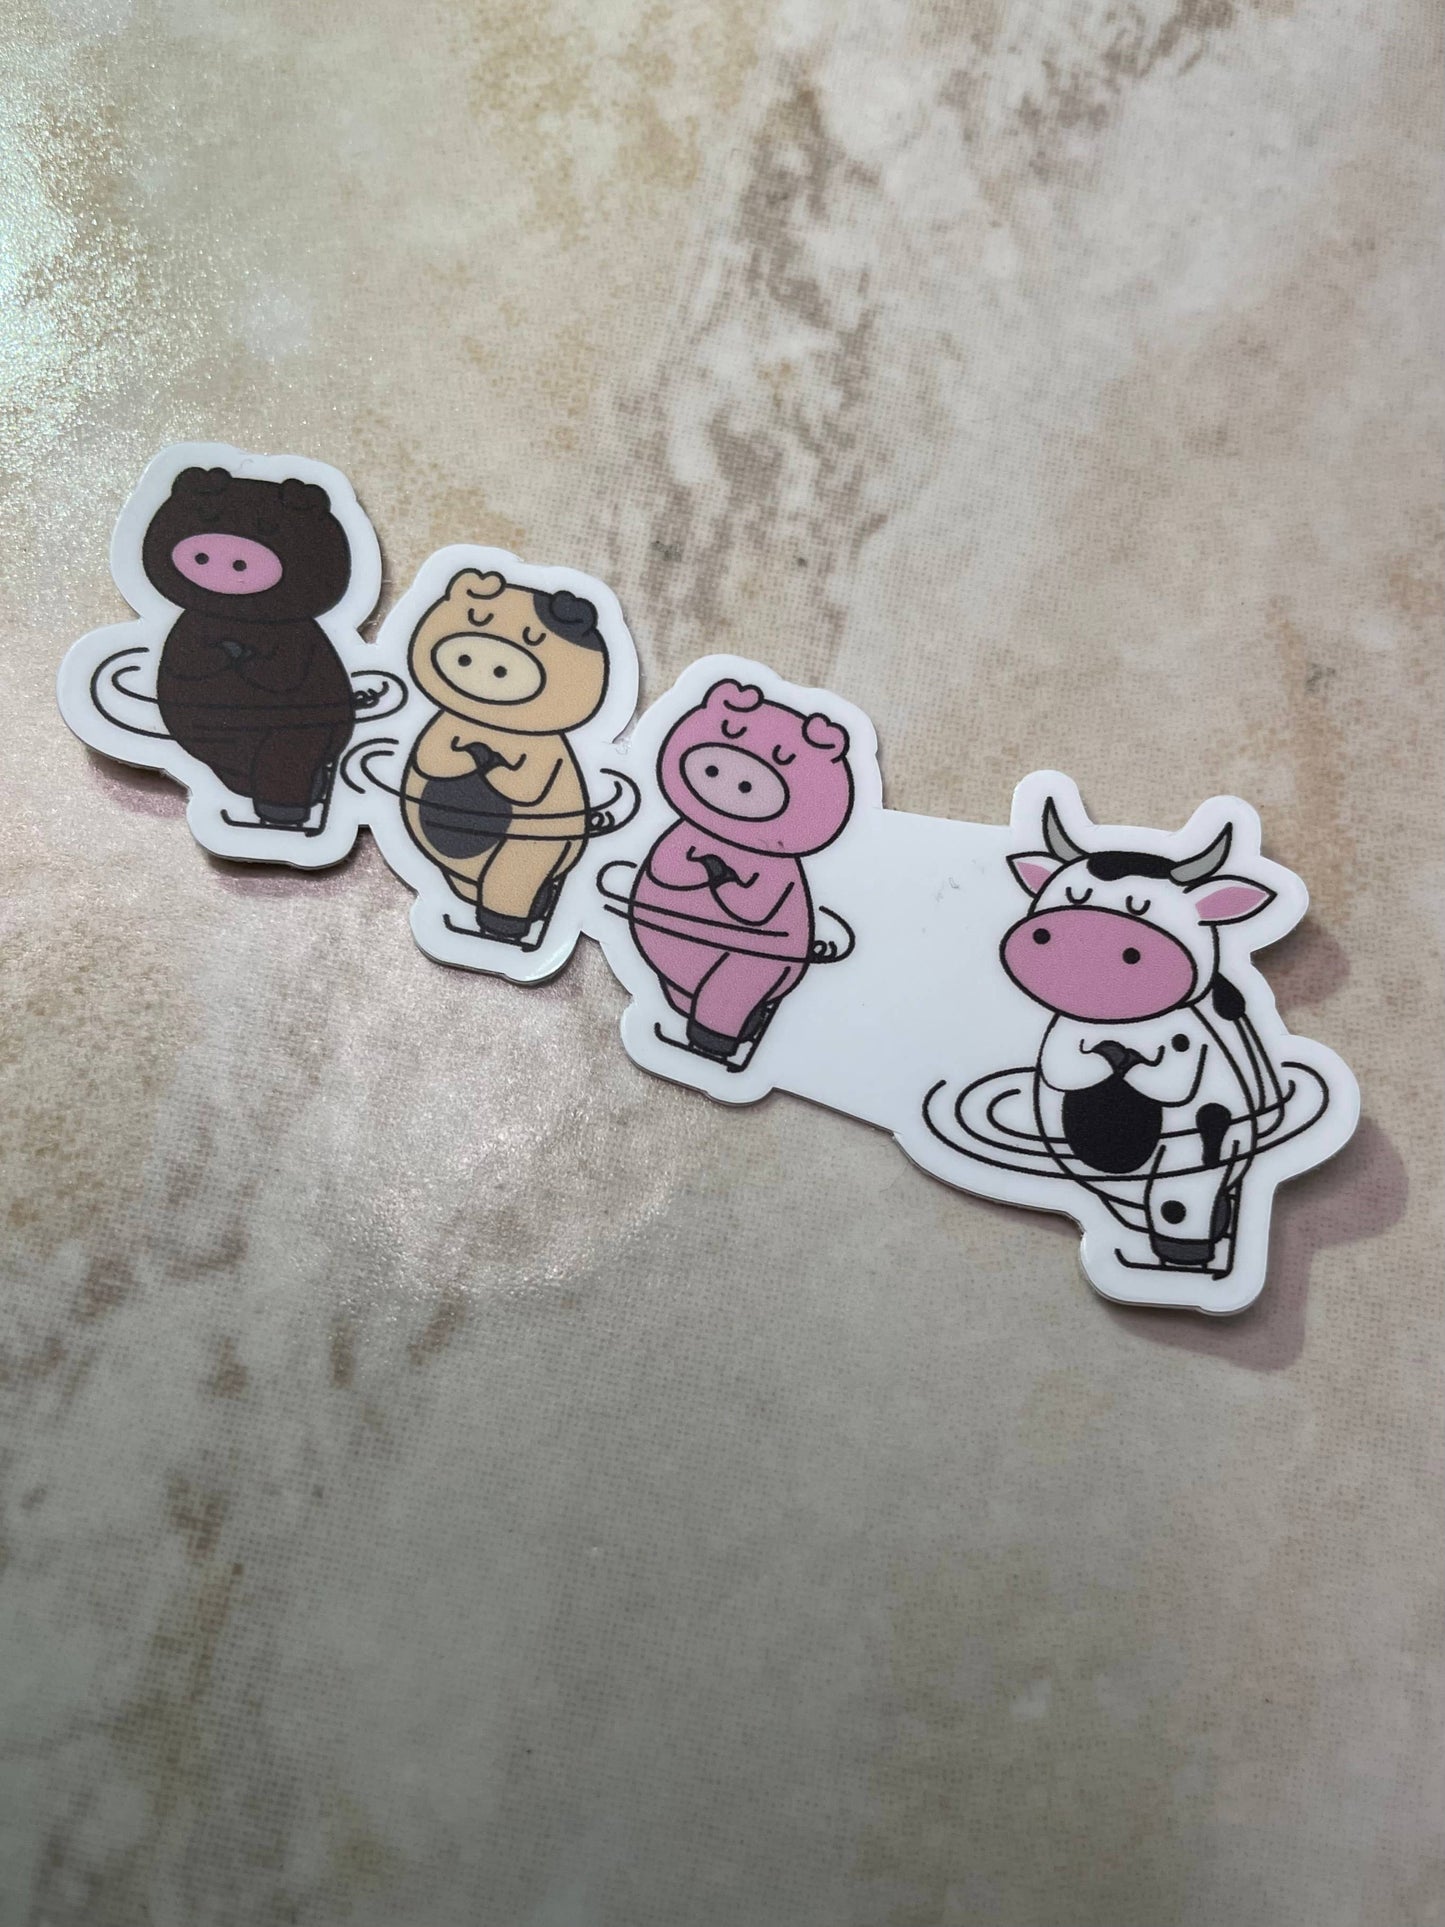 Triple "Sow/Cow" Figure Skating Parody Sticker, 3"